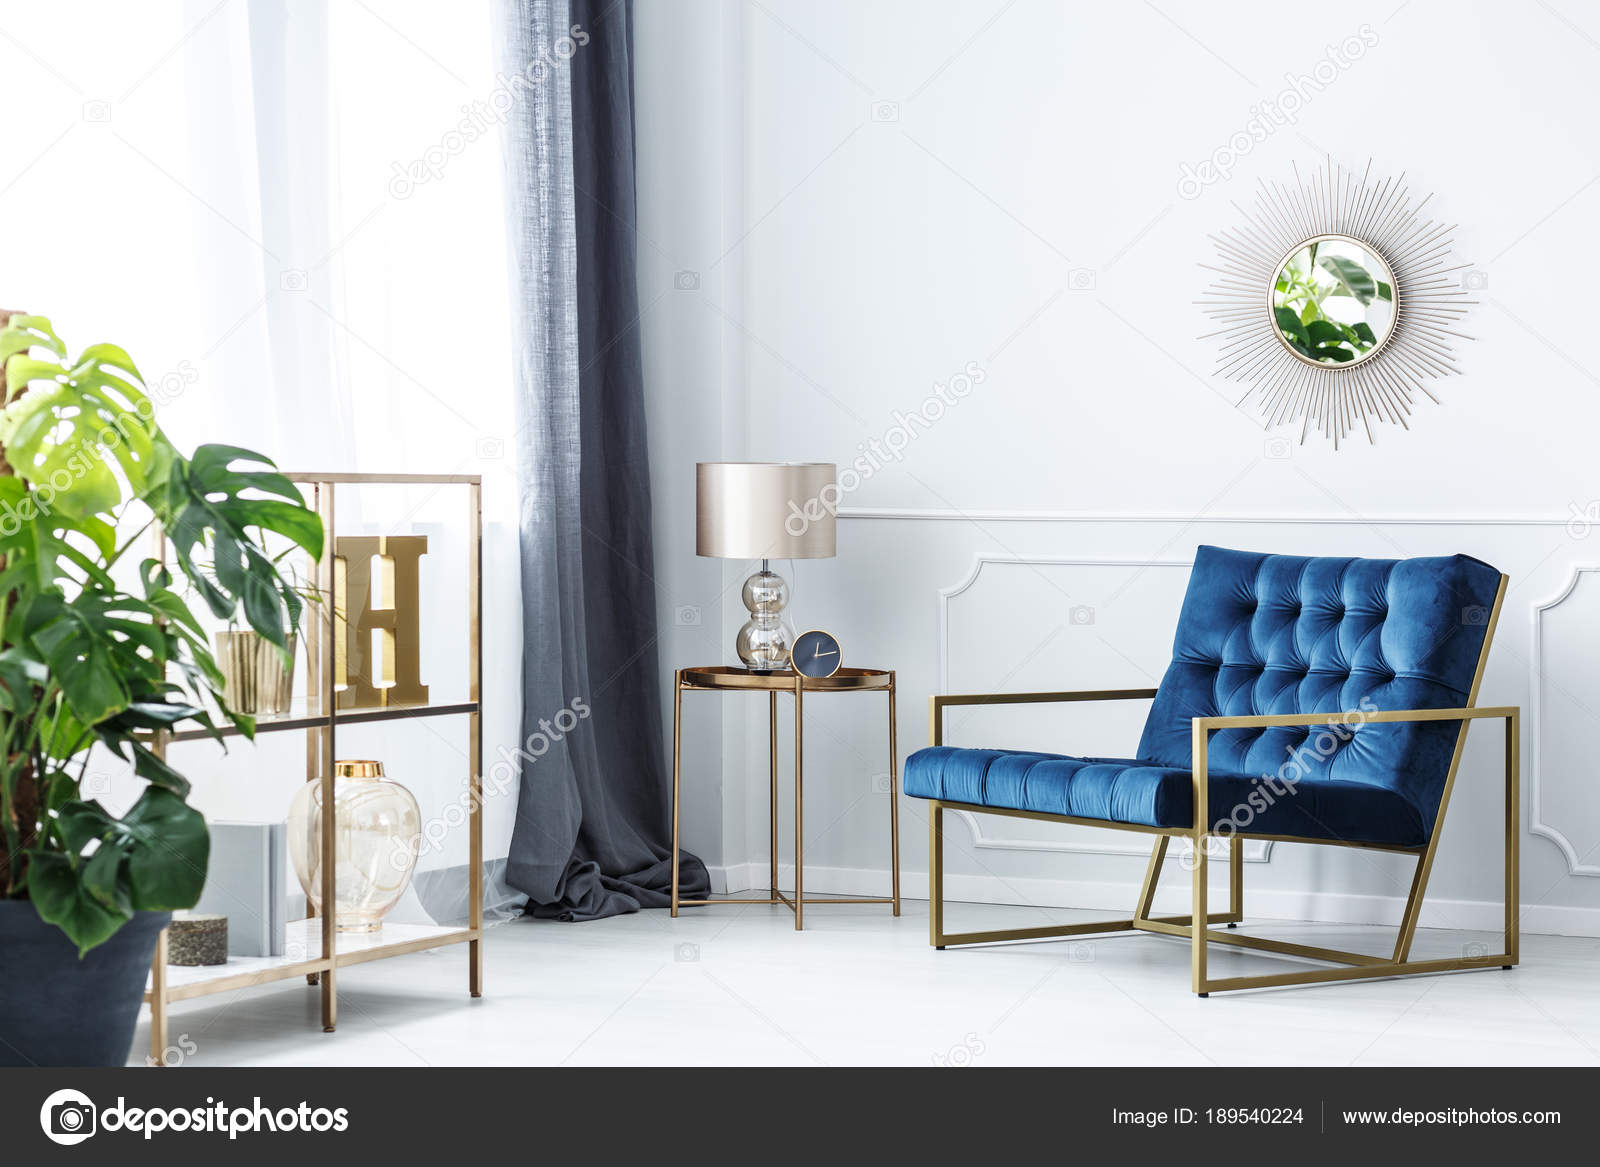 navy blue elegant living room 189540224